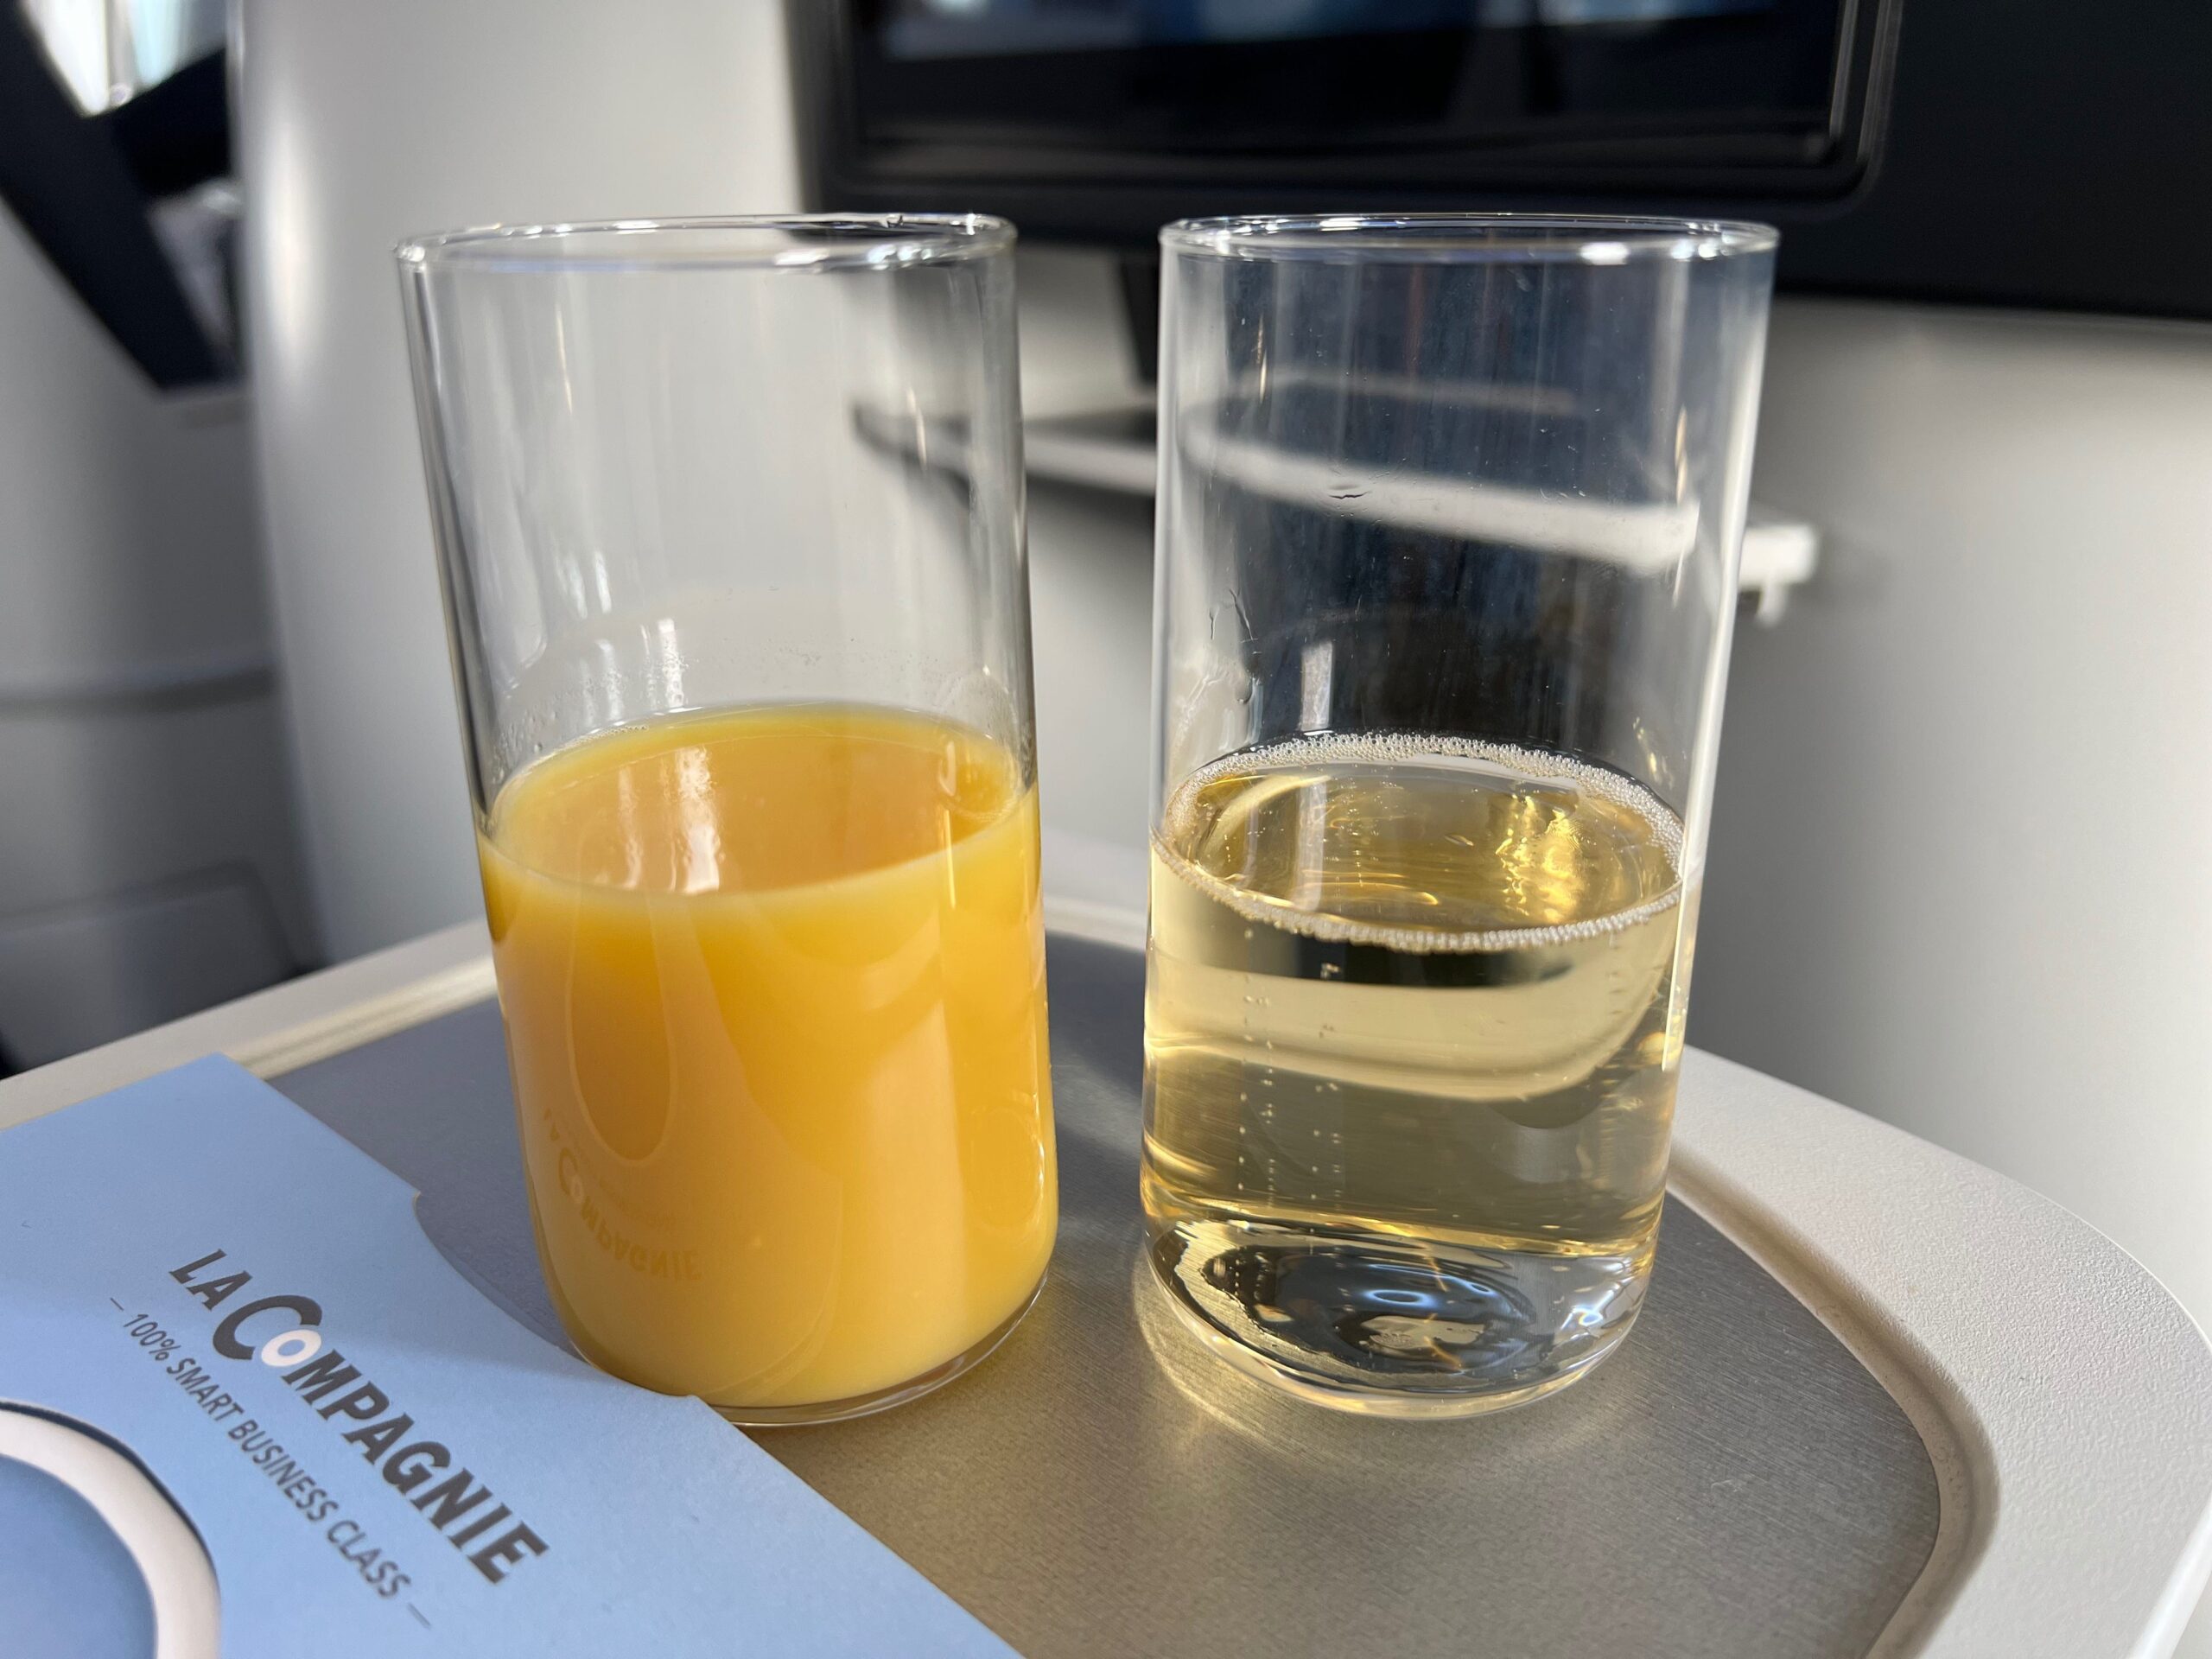 Met La Compagnie all-business class van Parijs naar New York vliegen: mijn sinaasappelsap en champagne in twee glazen.